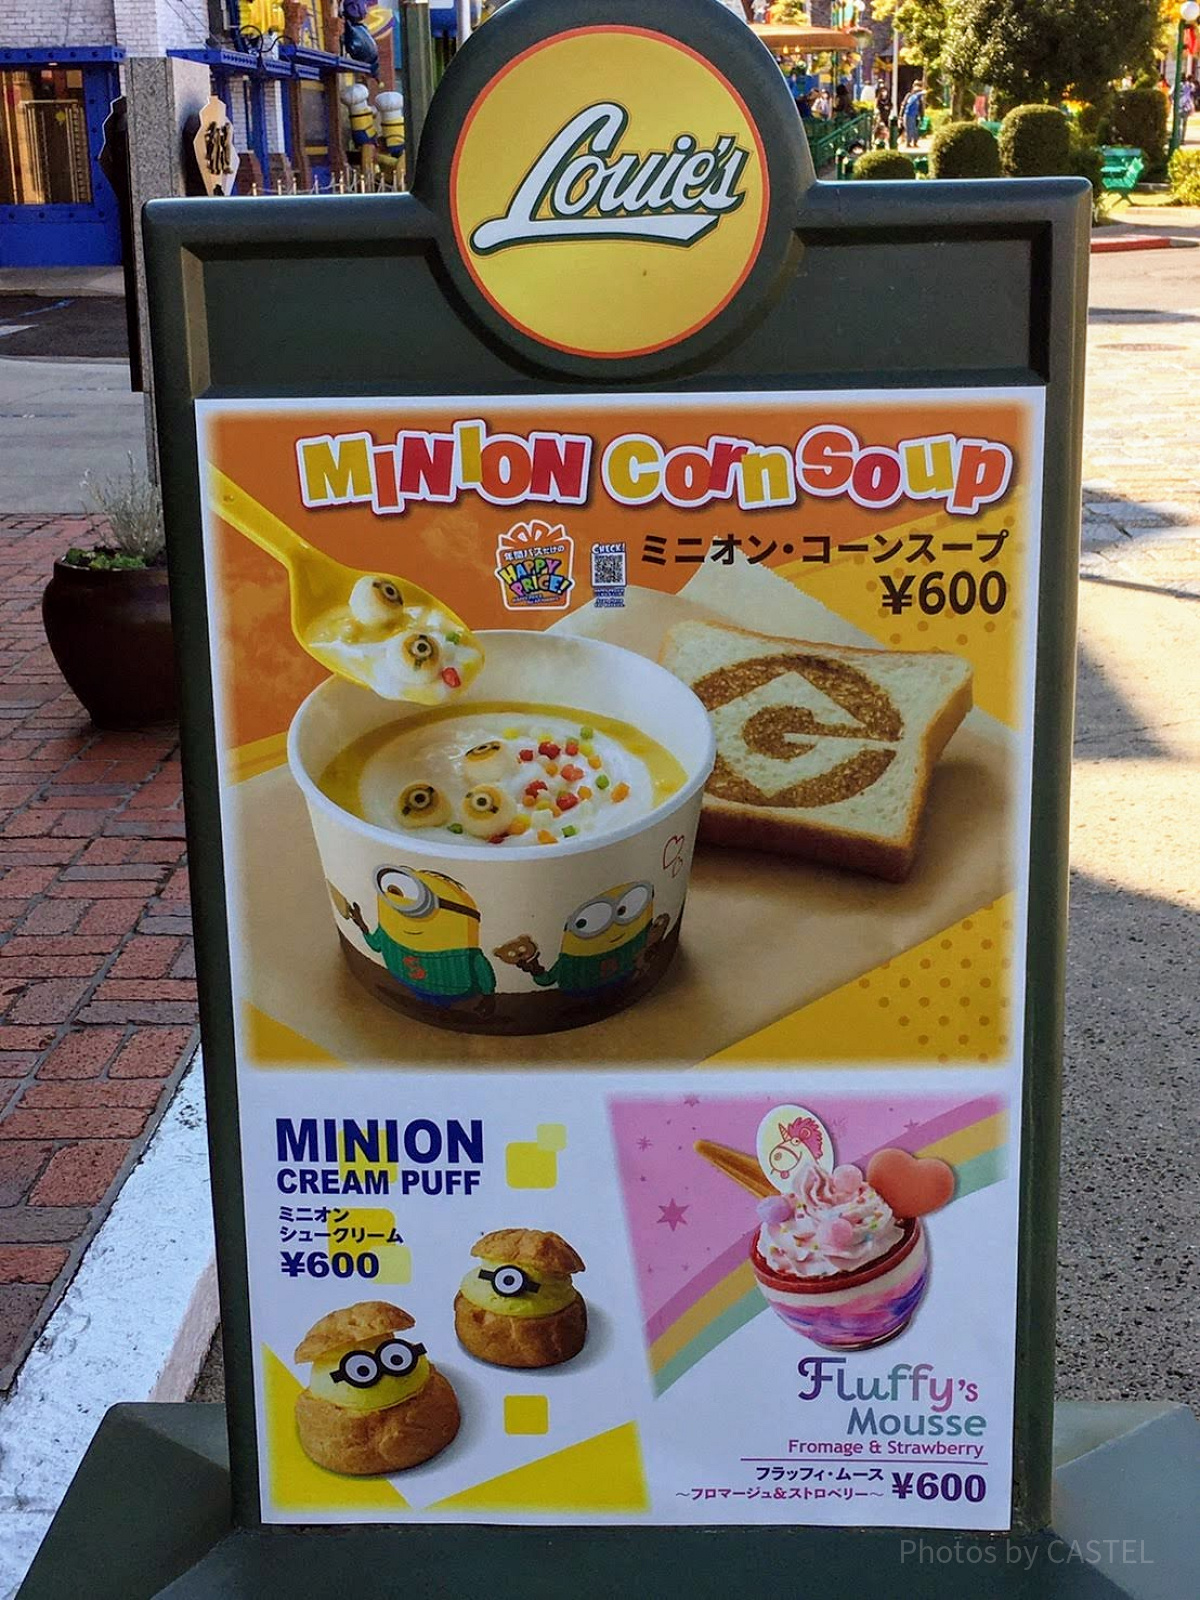 ミニオン・コーンスープ